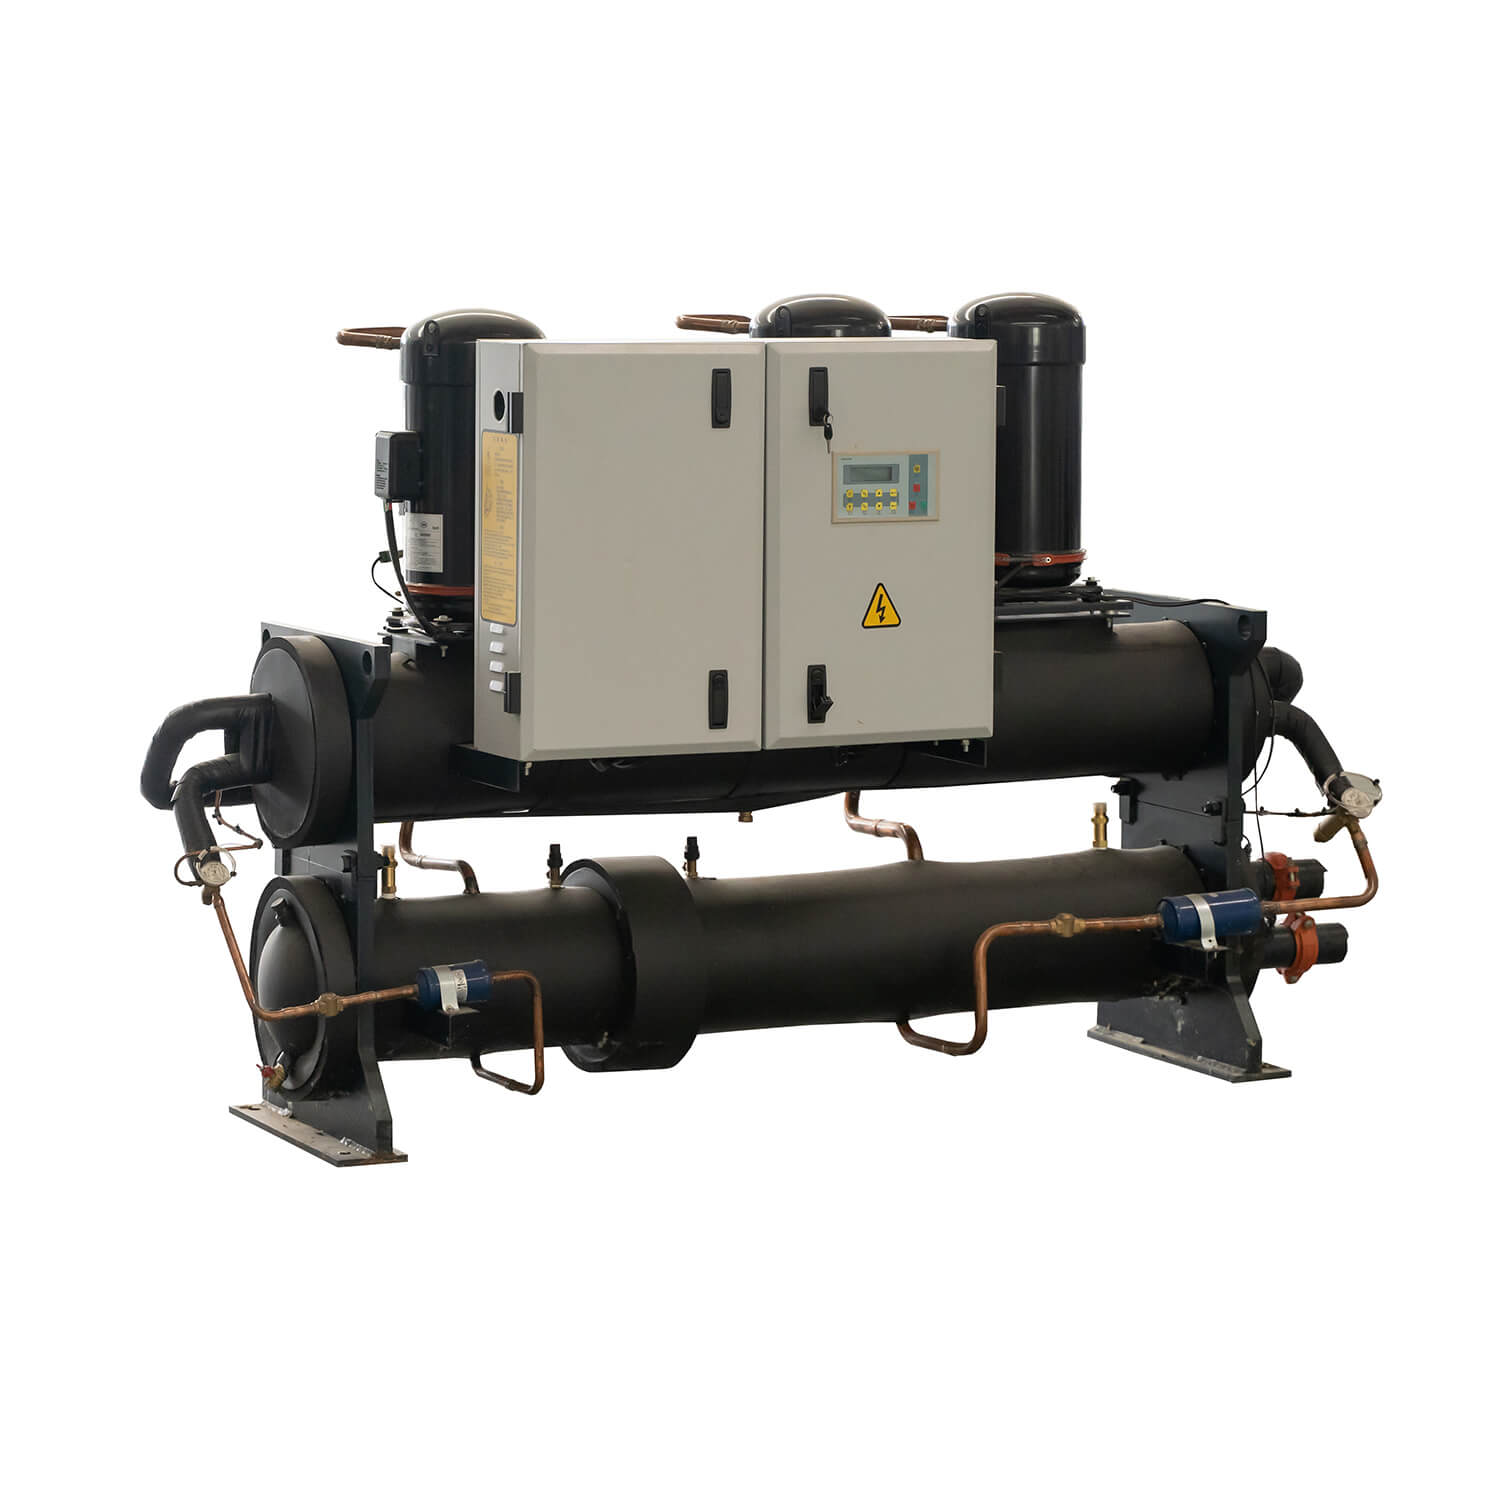 Enfriador de desplazamiento refrigerado por agua de 70kw-280kw y bomba de calor, aire acondicionado central industrial/comercial